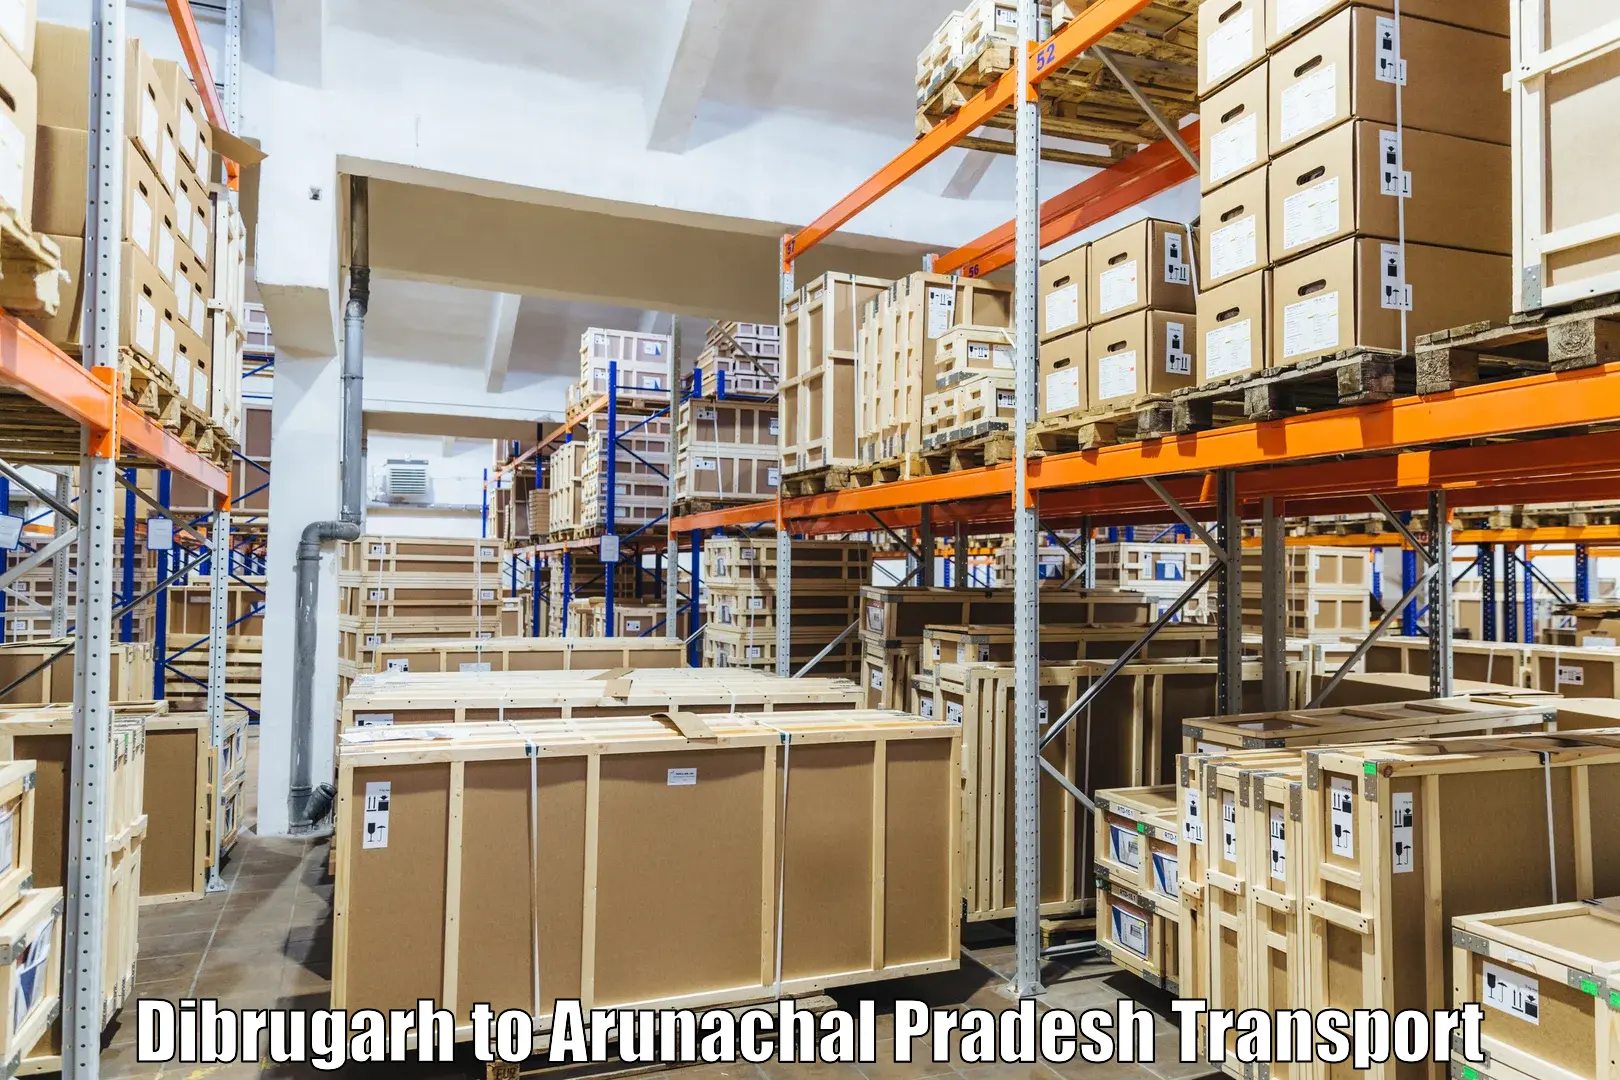 International cargo transportation services Dibrugarh to Arunachal Pradesh